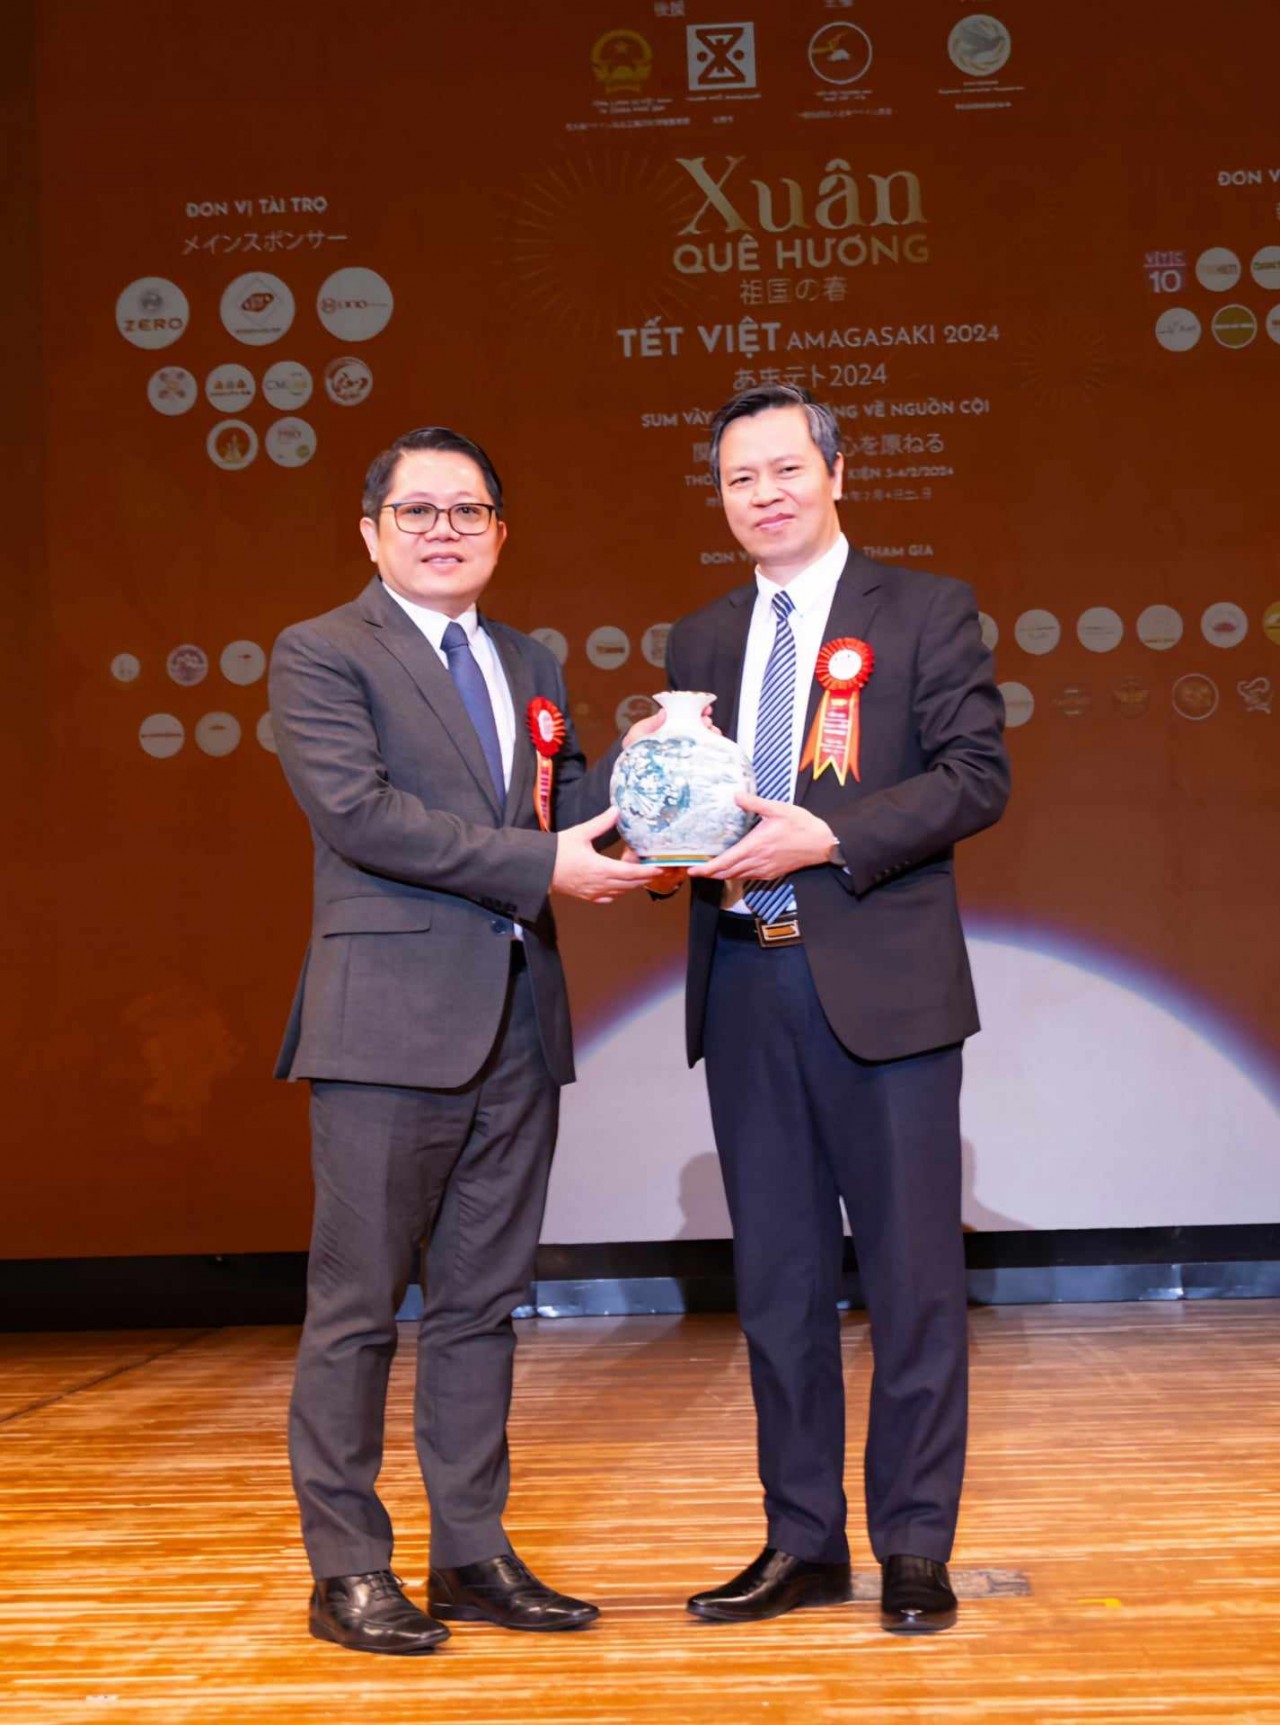 Giám đốc Sở Ngoại vụ Dư Văn Quảng tặng quà lưu niệm và cảm ơn Tổng Lãnh sự quán Việt Nam tại Osaka đã bảo trợ tổ chức Tết Việt Amagasaki 2024. (Ảnh: An Trung)